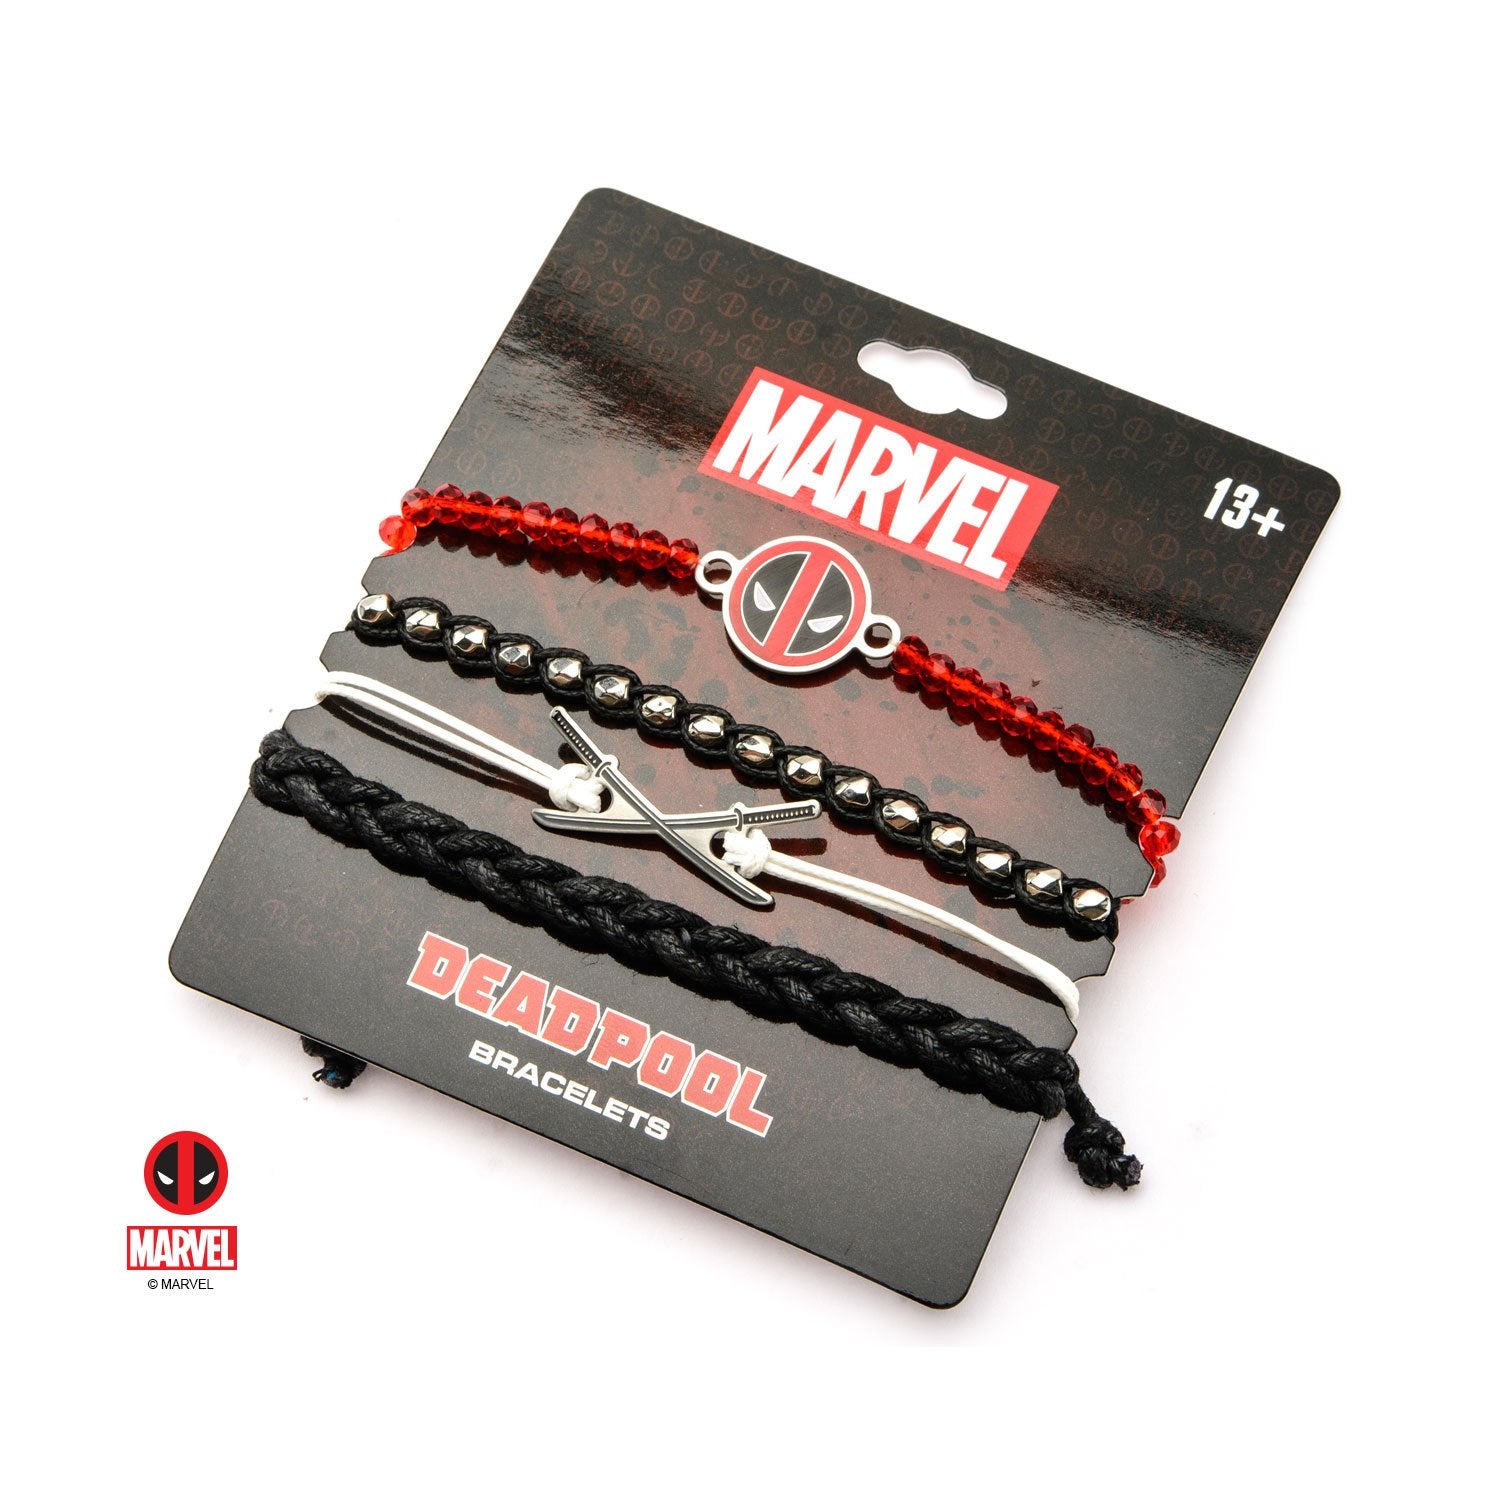 Marvel Deadpool Arm Party Bracelet Set (4pcs)